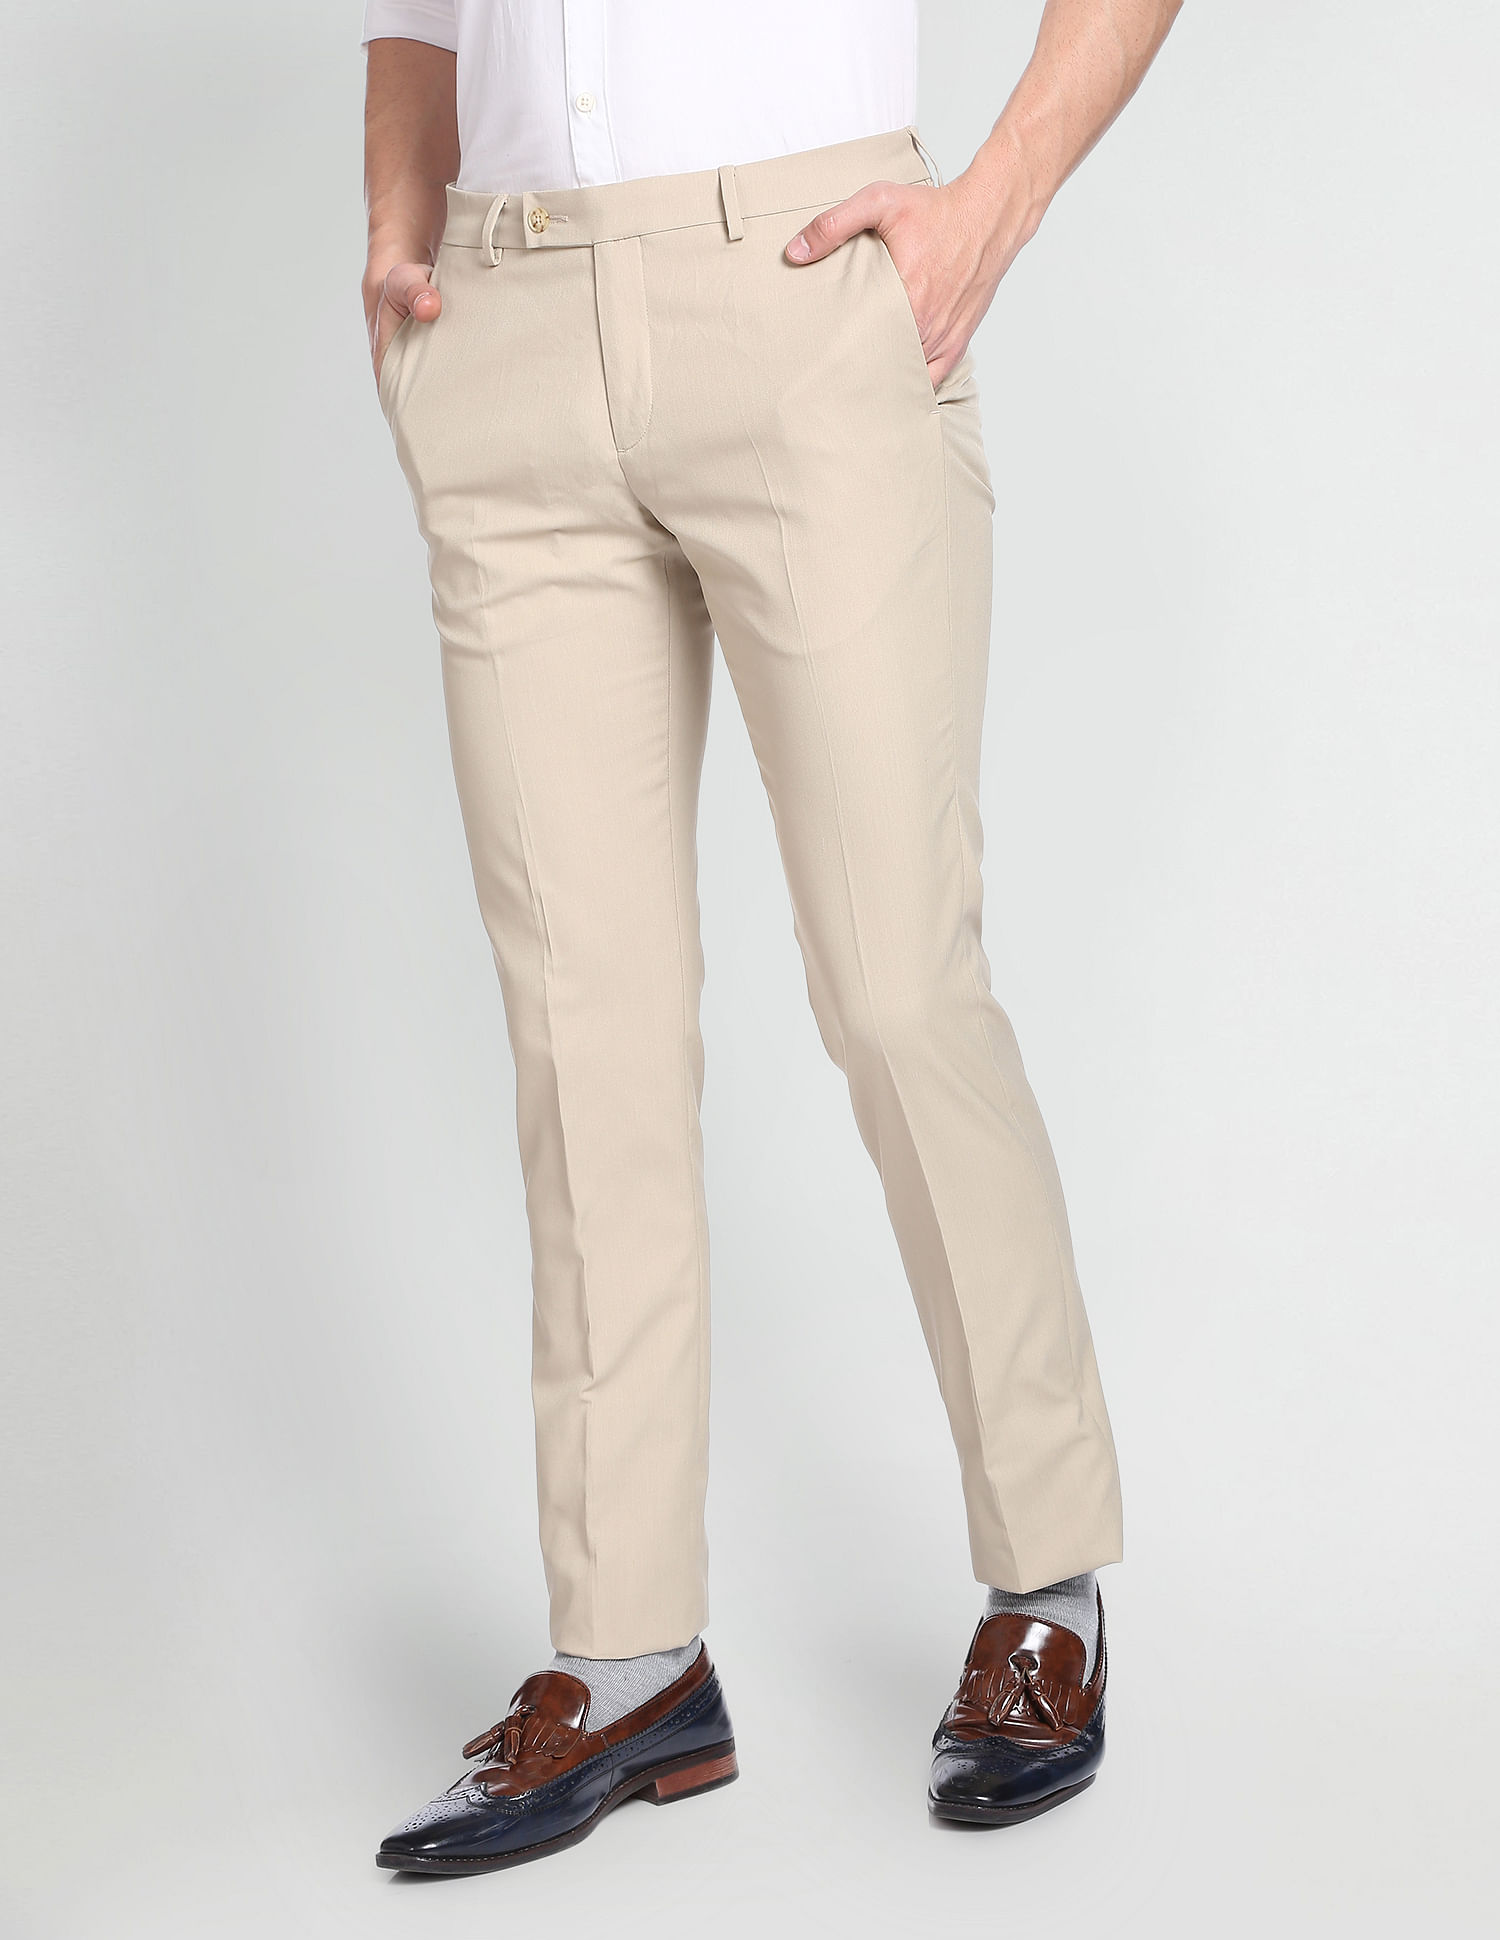 Arrow Linen Trousers - Buy Arrow Linen Trousers online in India